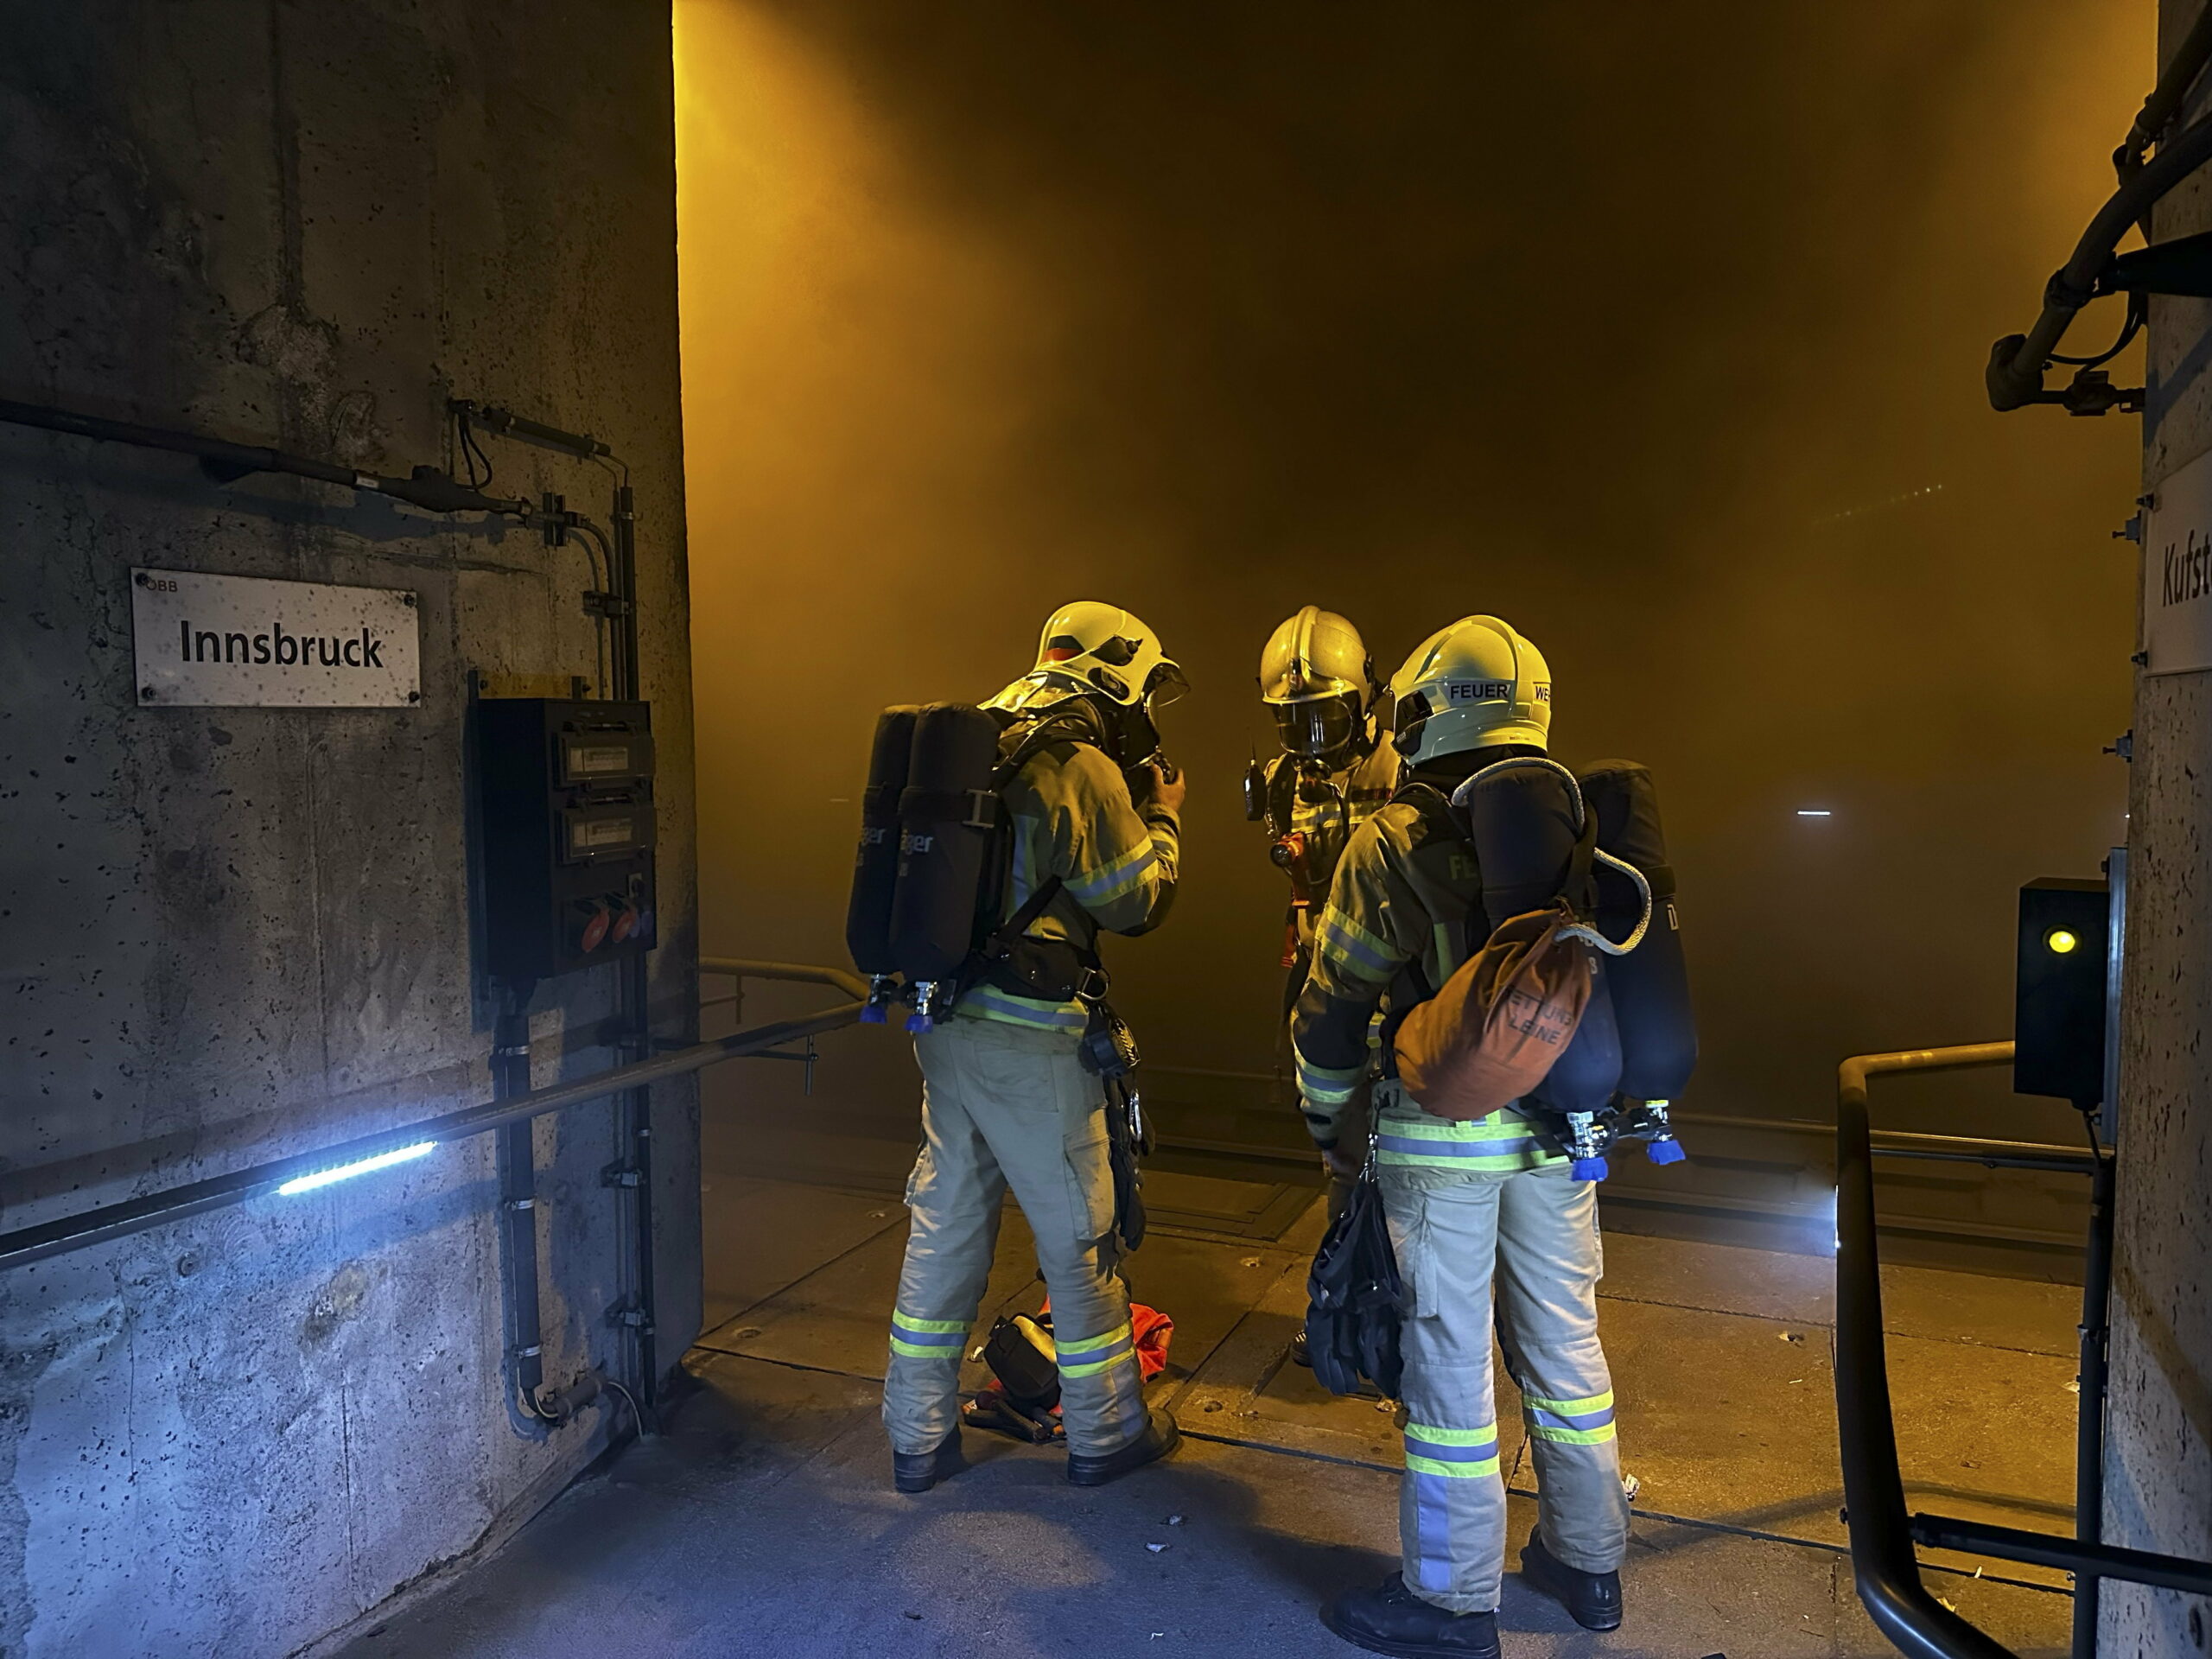 150 embert kellett kimenteni, mikor kigyulladt egy éjszakai vonat egy 13 kilométeres vasúti alagútban – többen füstmérgezést kaptak